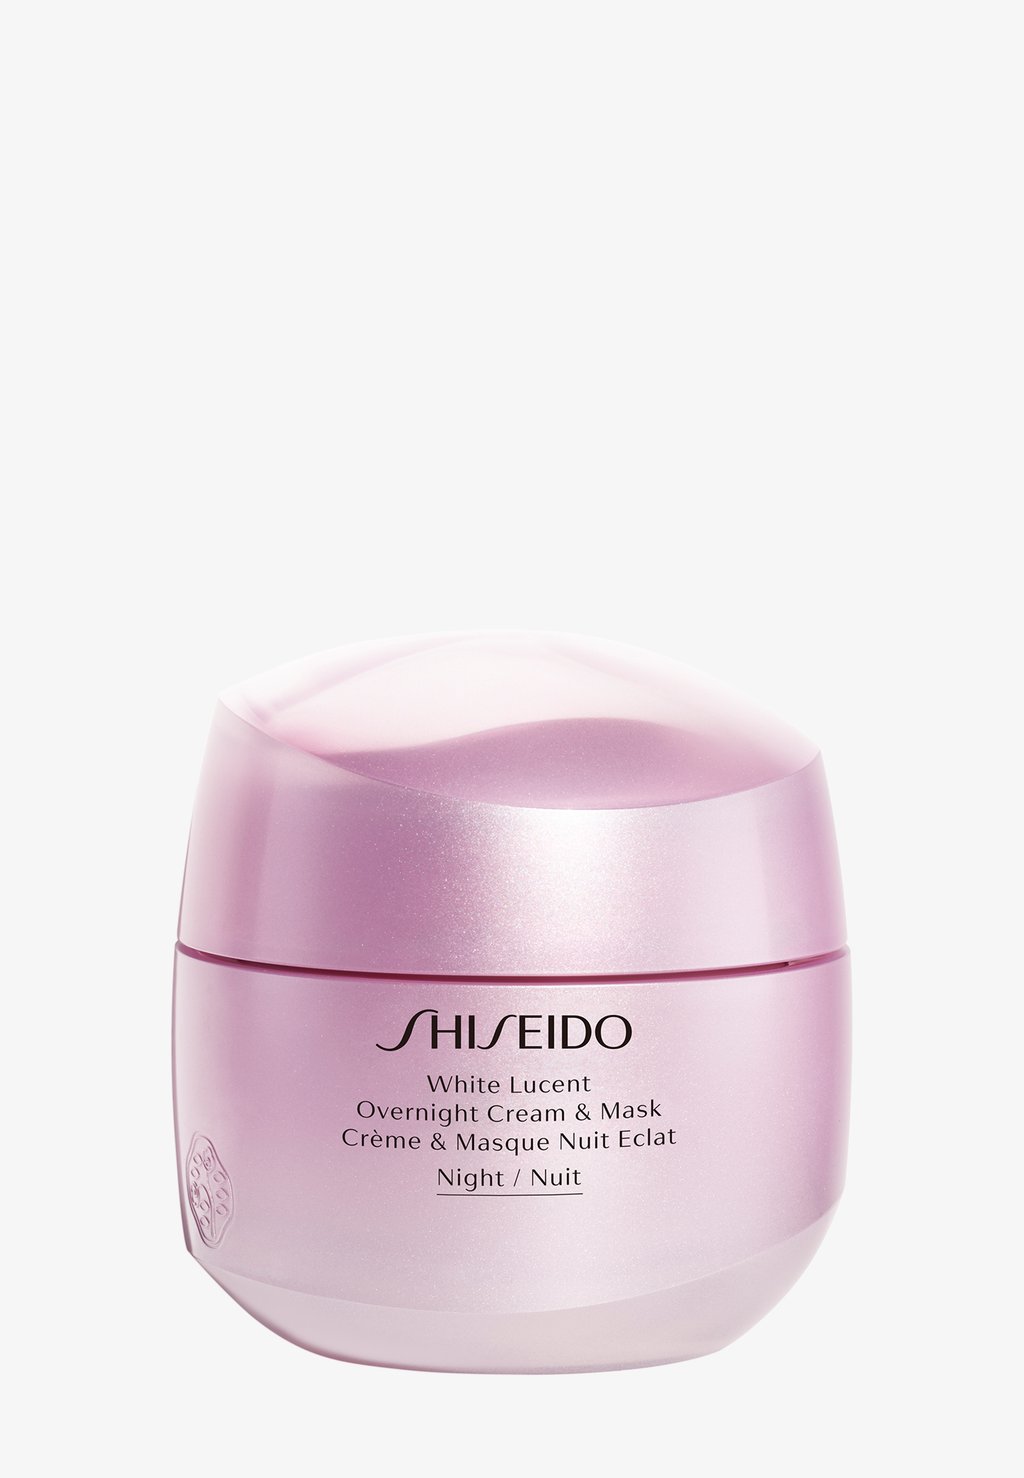 Дневной крем White Lucent Ночной Крем И Маска Shiseido уход за лицом shiseido ночная крем маска white lucent